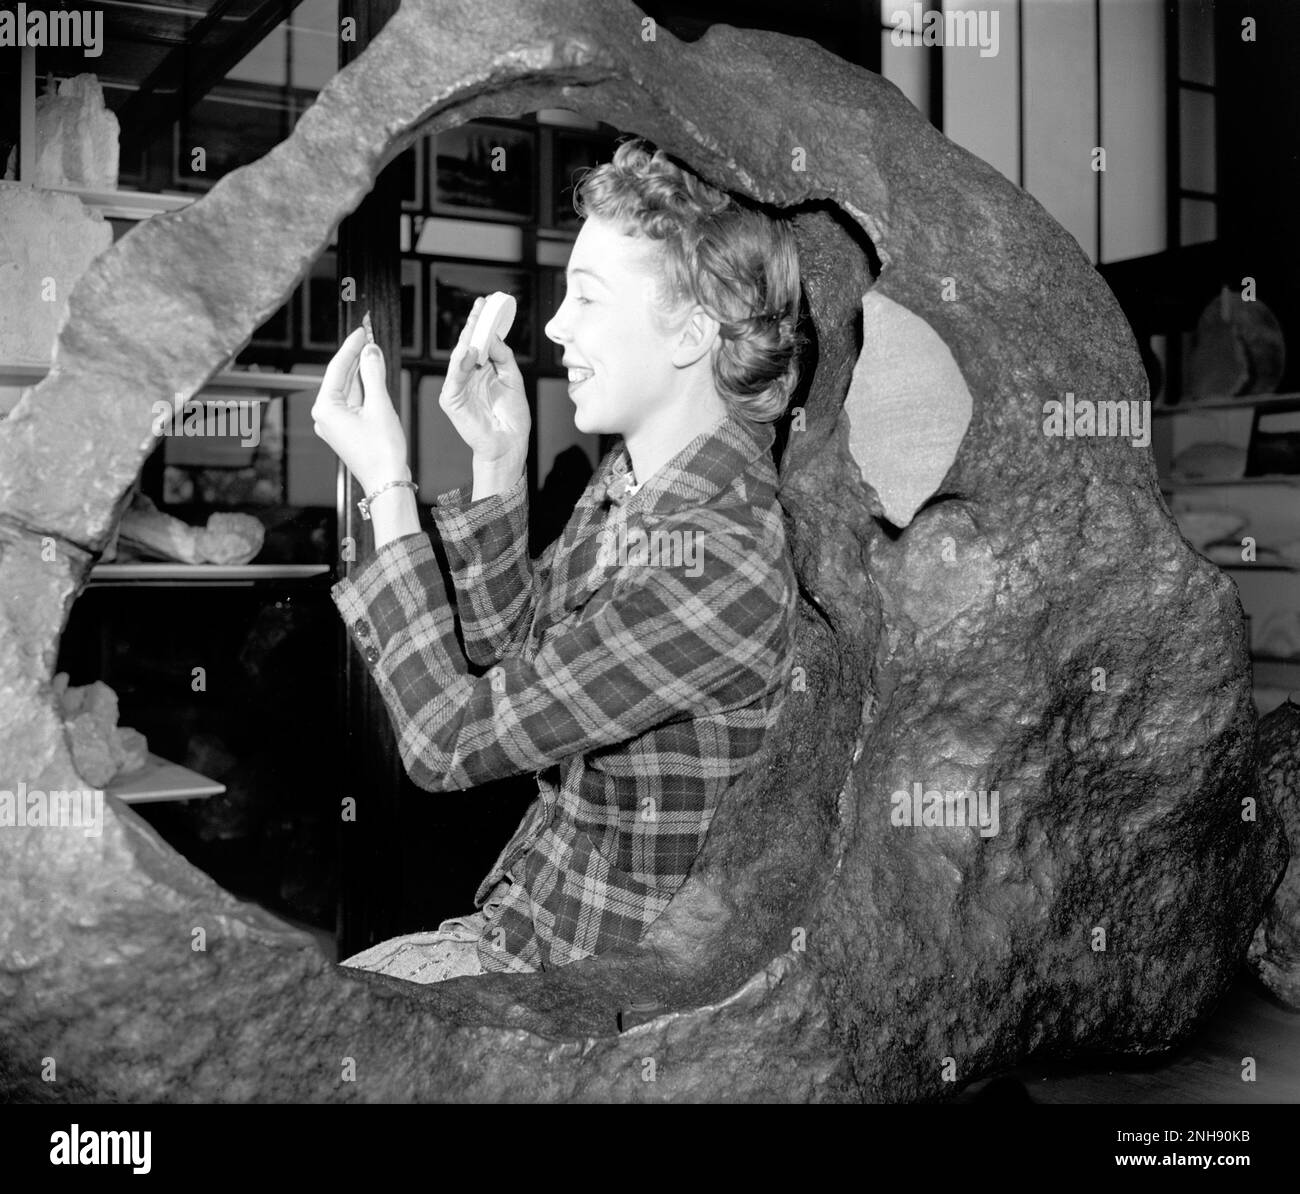 Frau, die mit dem Irwin-Ainsa (Tucson-Ring)-Meteoriten im Smithsonian Museum of Natural History, Washington, D.C. posierte Dieser Tucson-Meteorit ist ein Brezinaite-Meteoritenfragment. Es wurde in den 1700er Jahren von Jesuiten-Missionaren am Fuße der Sierra de la Madera beansprucht und schließlich nach Tucson, Arizona, transportiert, wo es als eine Art öffentlicher Amboss verwendet wurde. Brezinaite ist ein seltenes Mineral, das aus Chrom und Schwefel besteht und in Meteoriten vorkommt. Harris & Ewing, Fotograf, c. 1938-39. Stockfoto